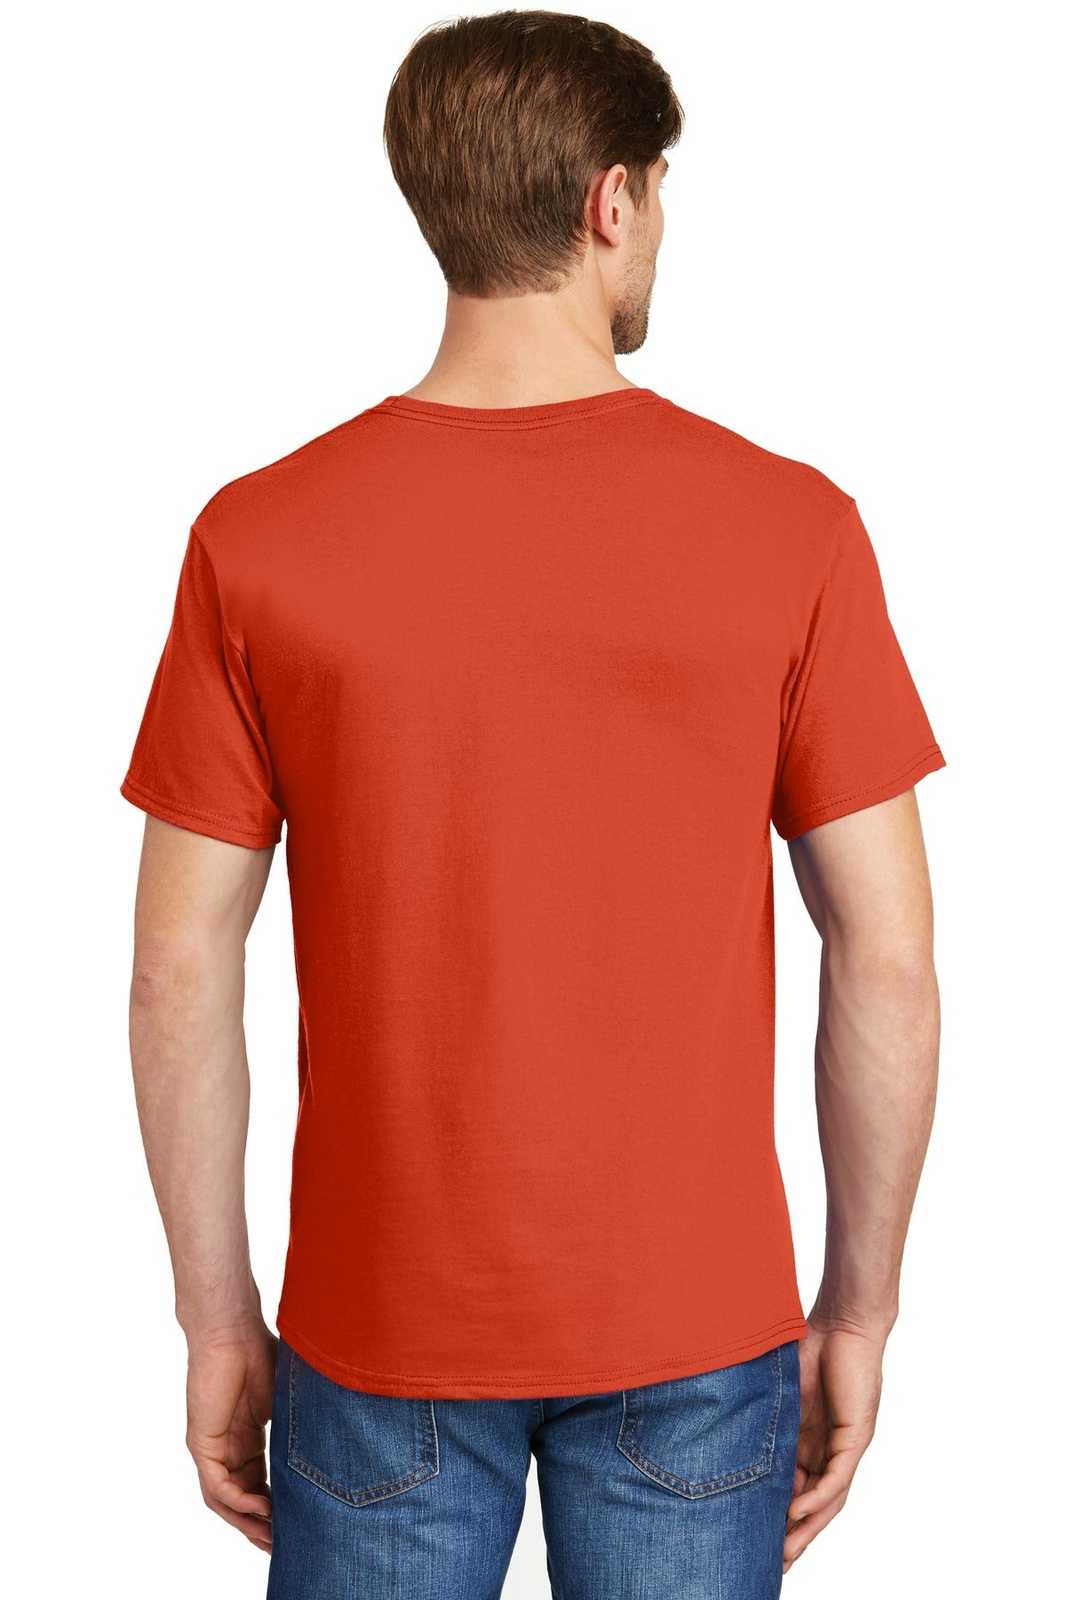 Hanes 5280 Comfortsoft 100% Cotton T-Shirt - Orange - HIT a Double